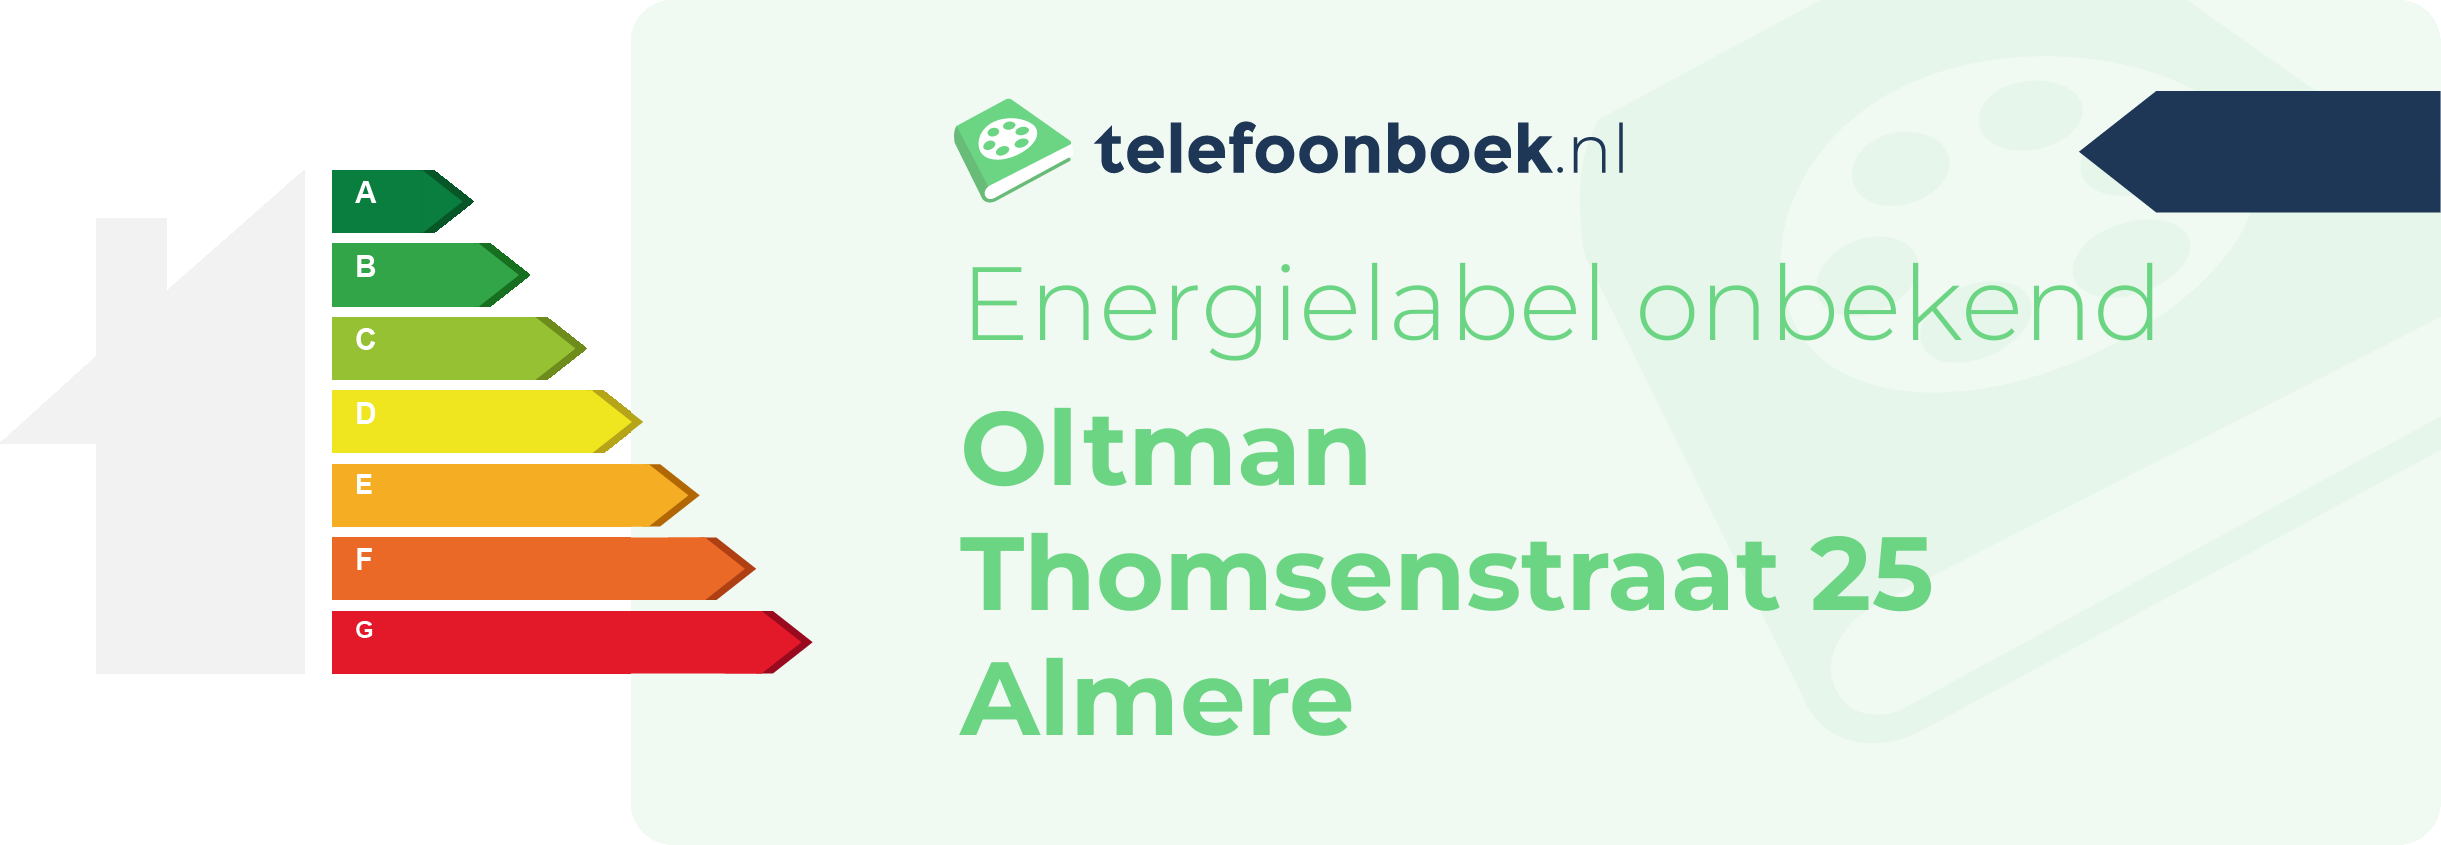 Energielabel Oltman Thomsenstraat 25 Almere